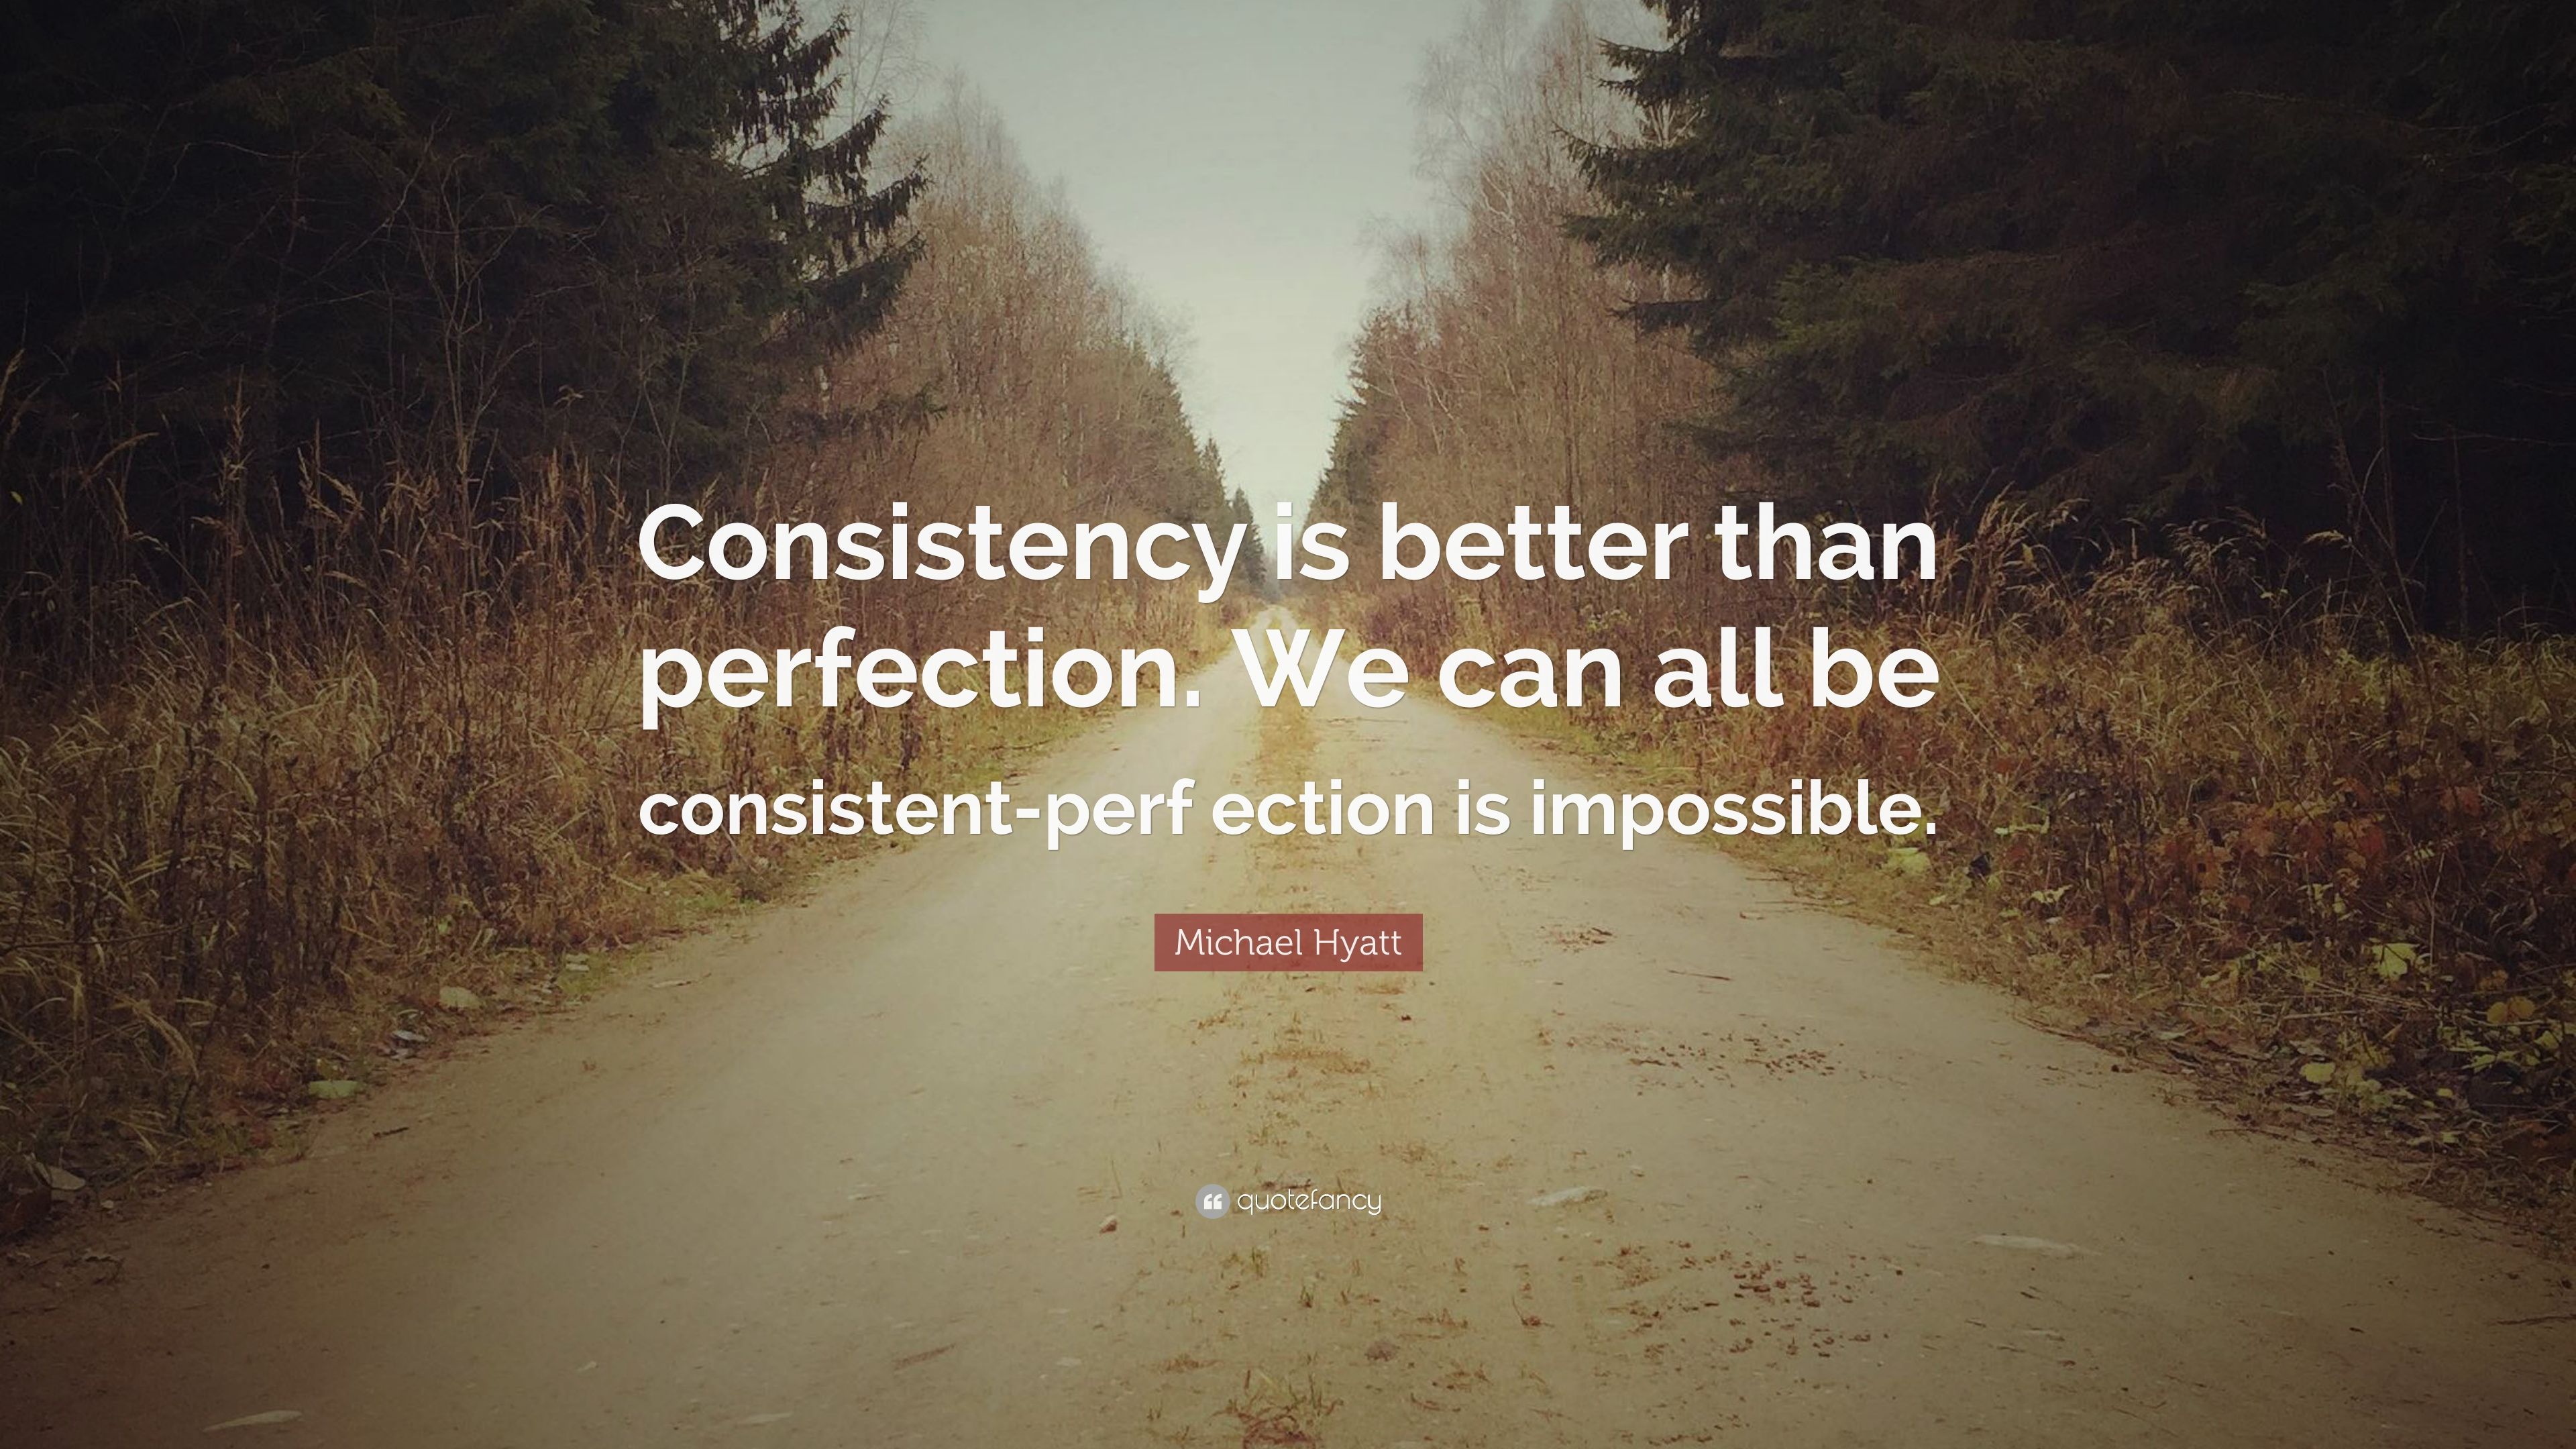 Michael Hyatt Quote: “Consistency is .quotefancy.com